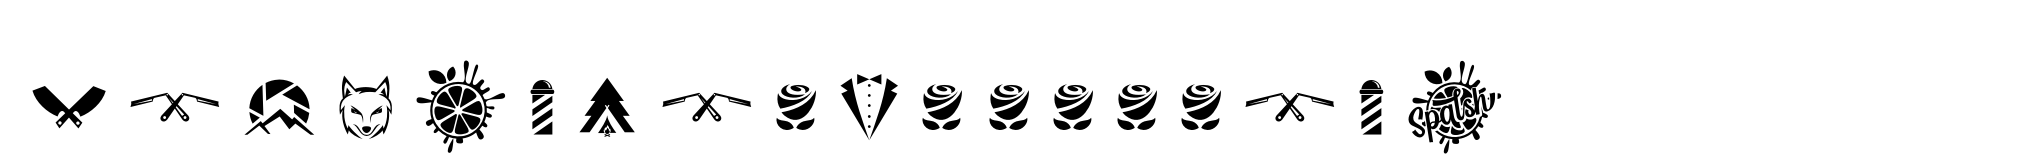 Yackien Logo doodles image